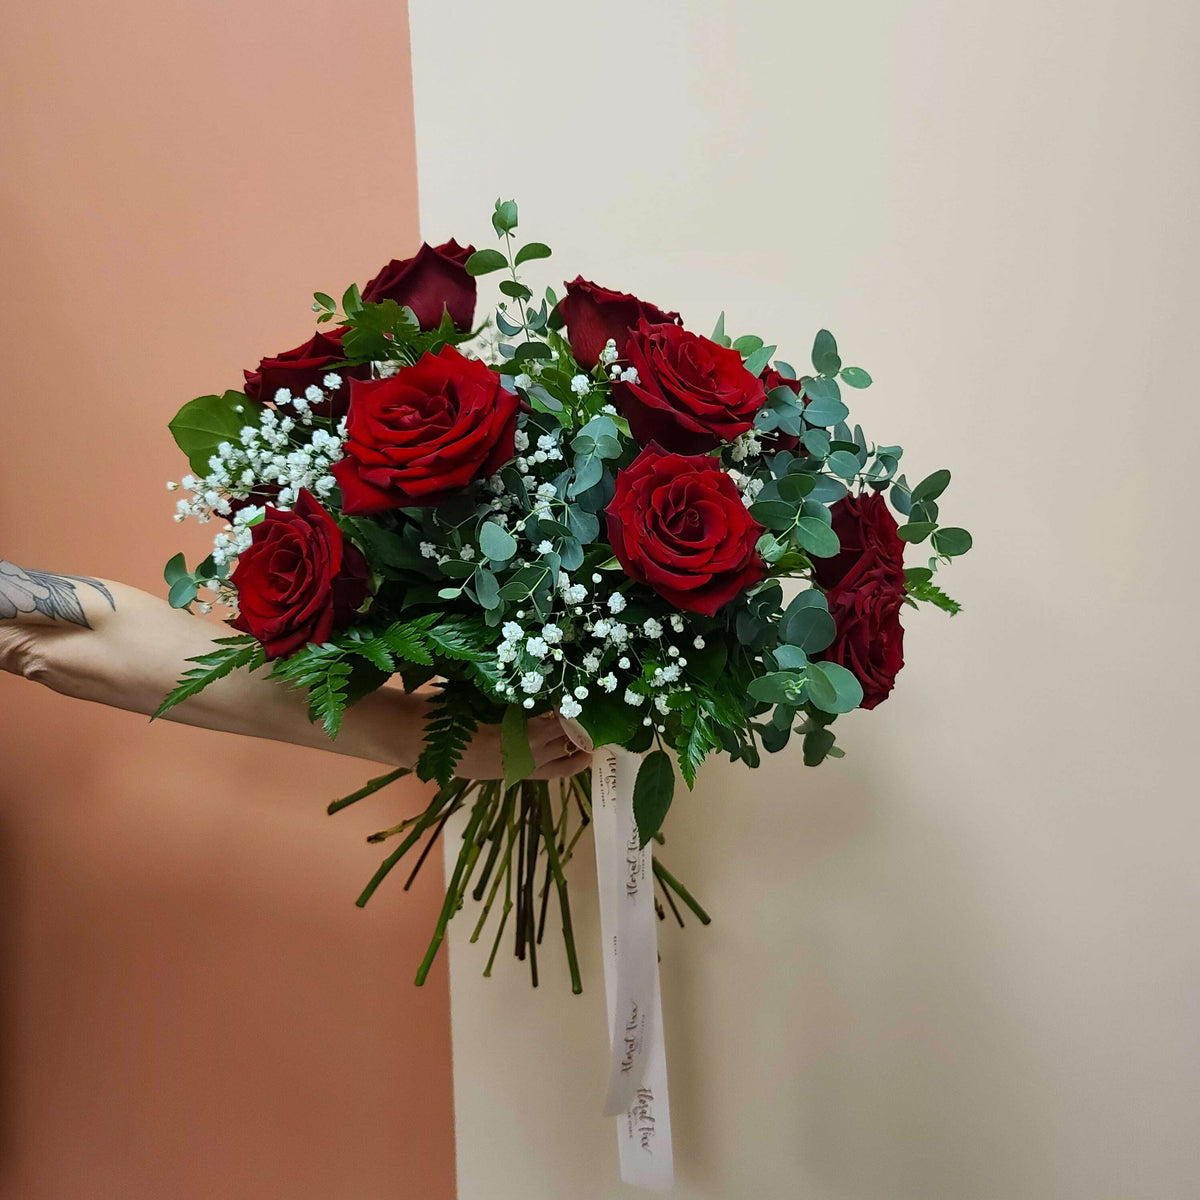 1 Dozen Rose Bouquet_Flower Arrangement_Floral Fixx Design Studio_The Floral Fixx